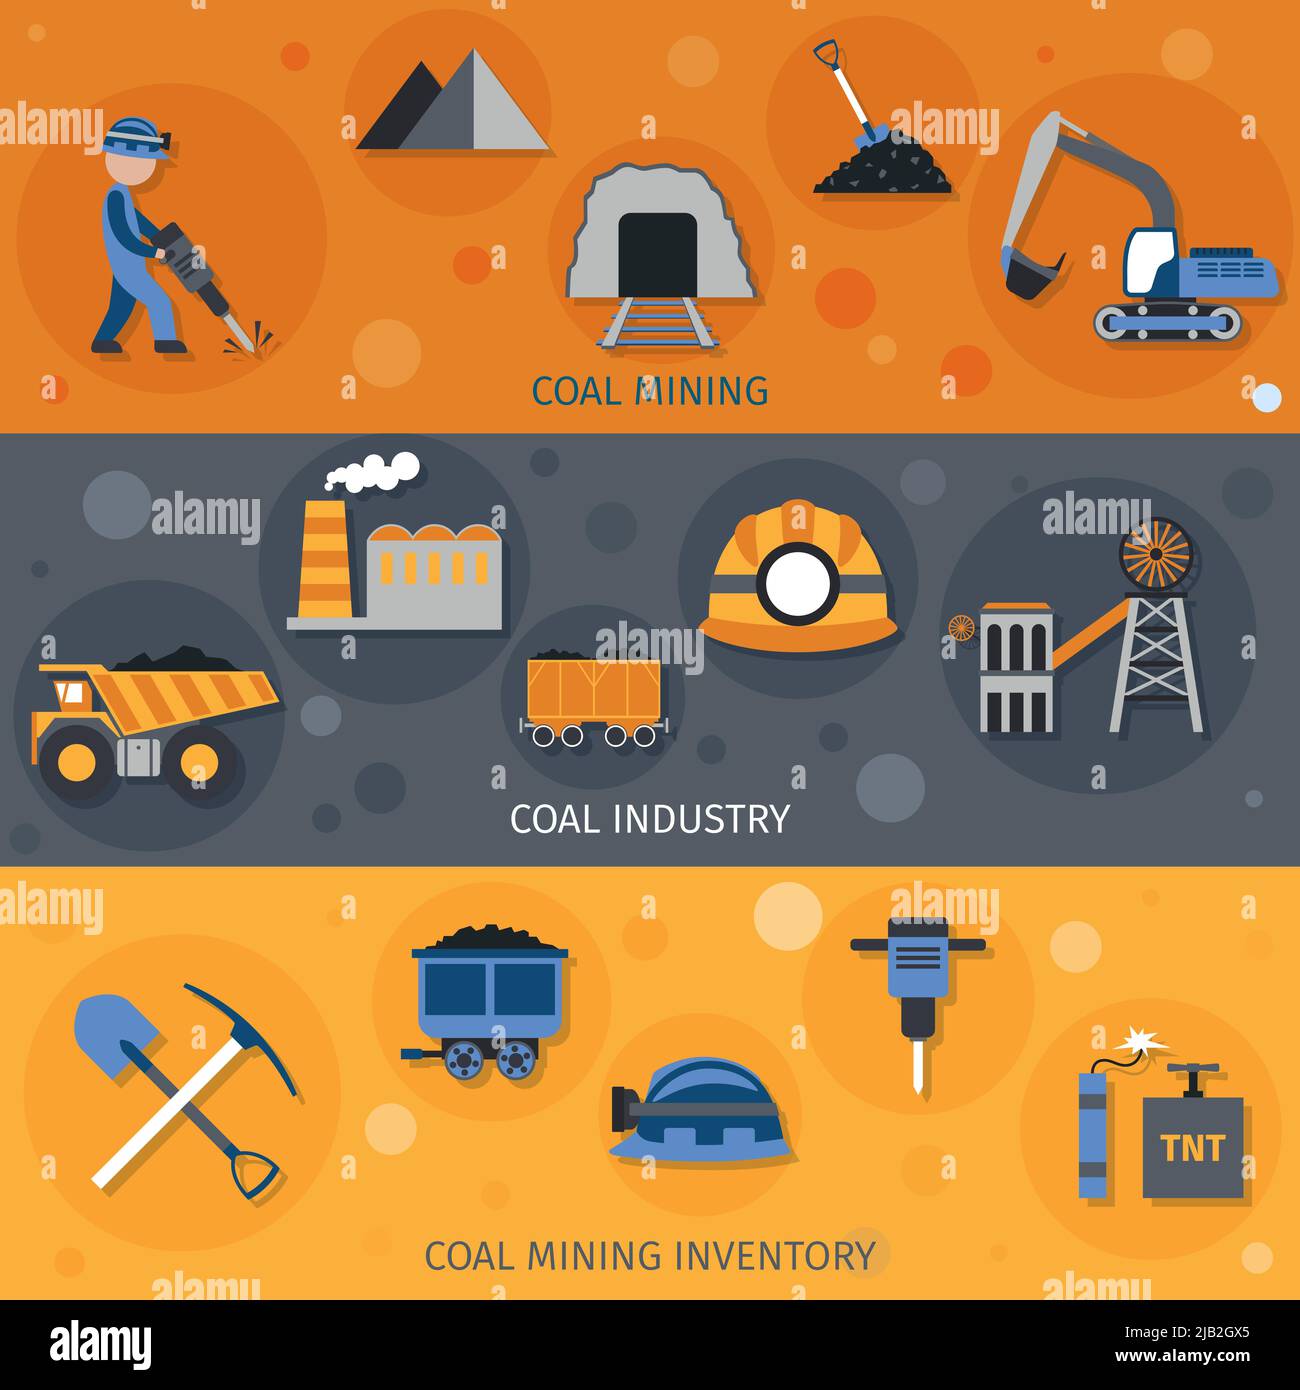 Horizontale Banner für die Kohleindustrie mit isolierten Vektorgrafiken für Bergbaubestandteile Stock Vektor